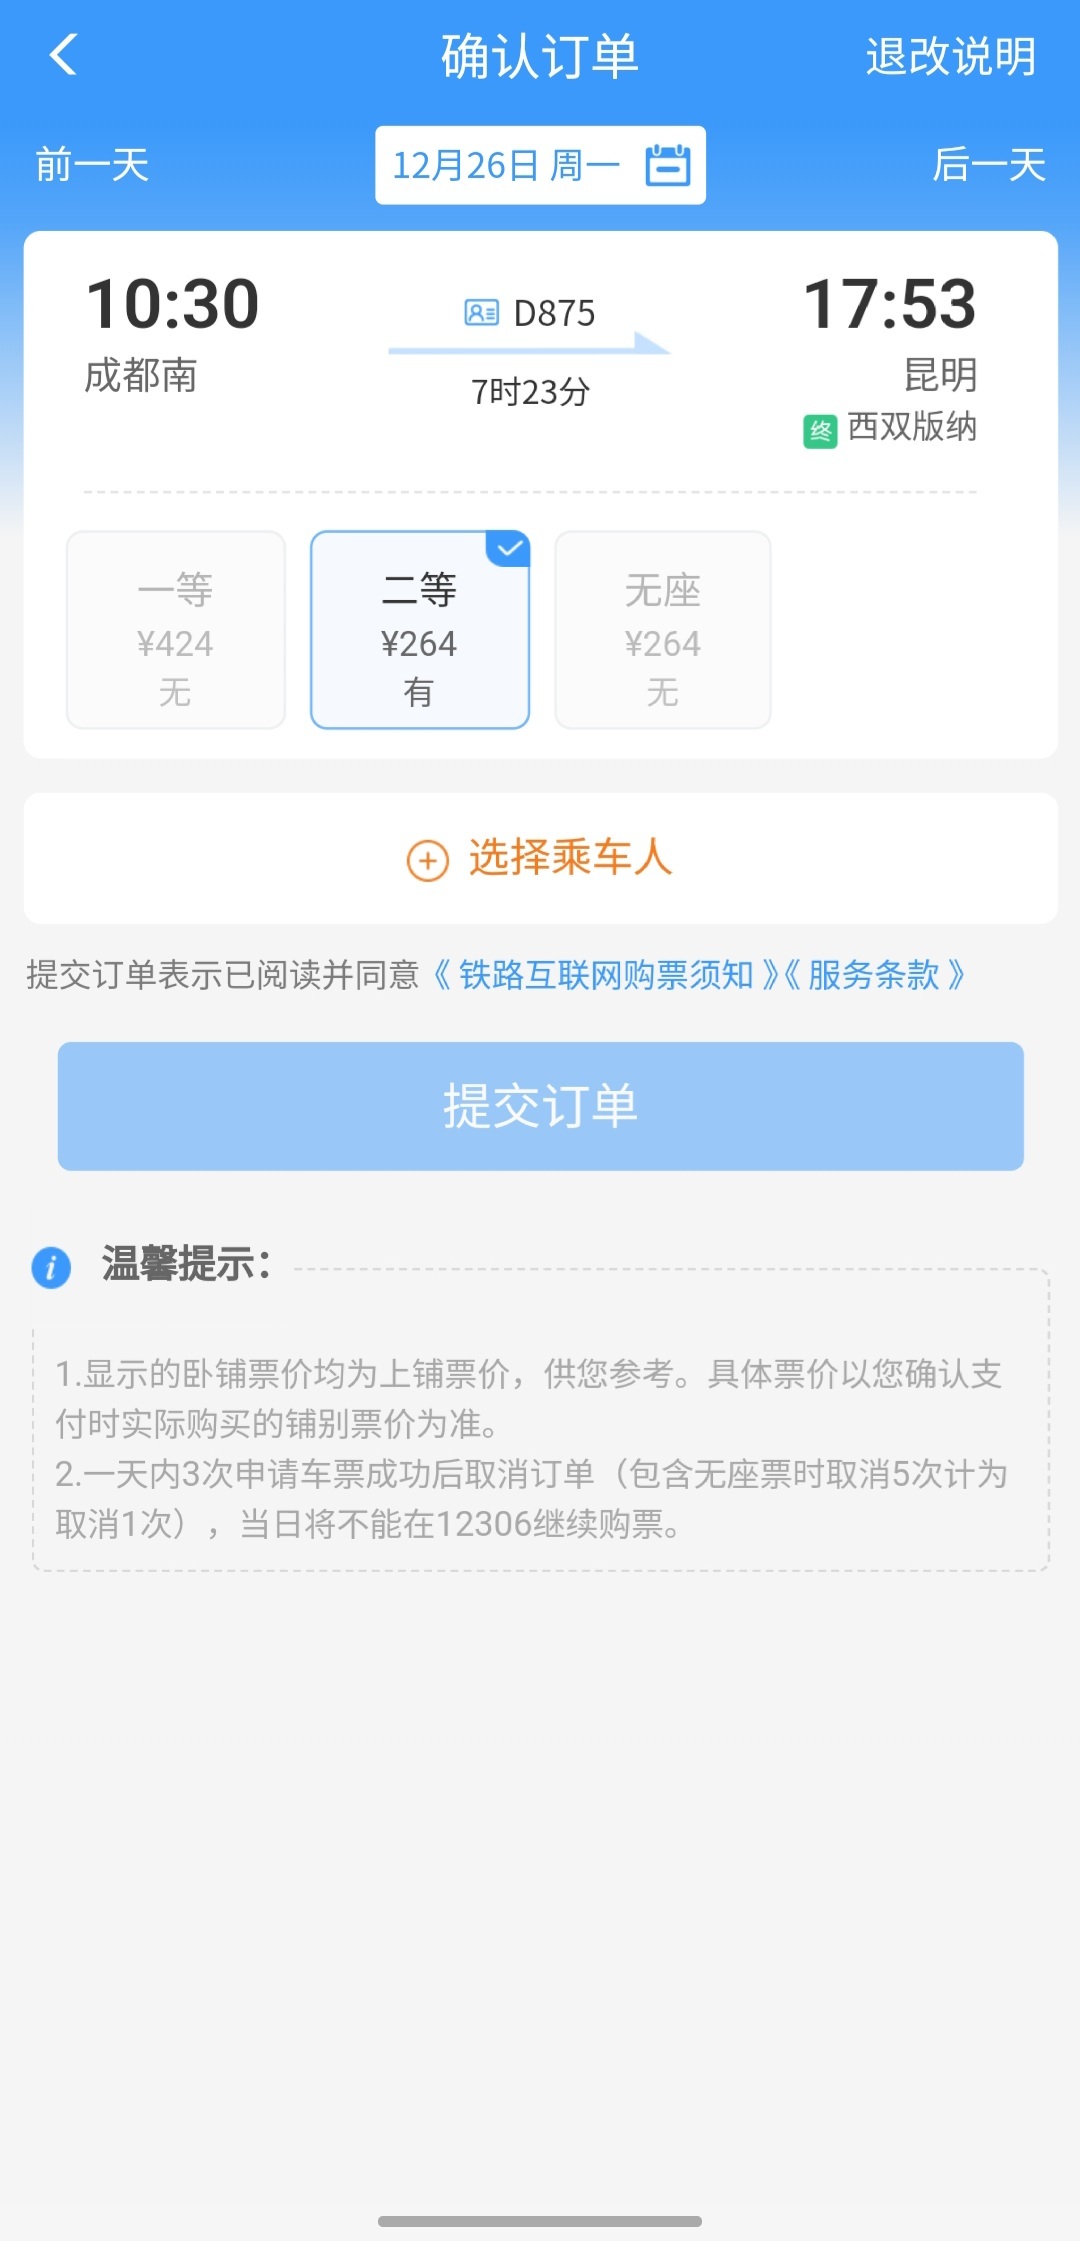 新成昆铁路车票开售 成都至昆明二等座票价264元 至西昌149元